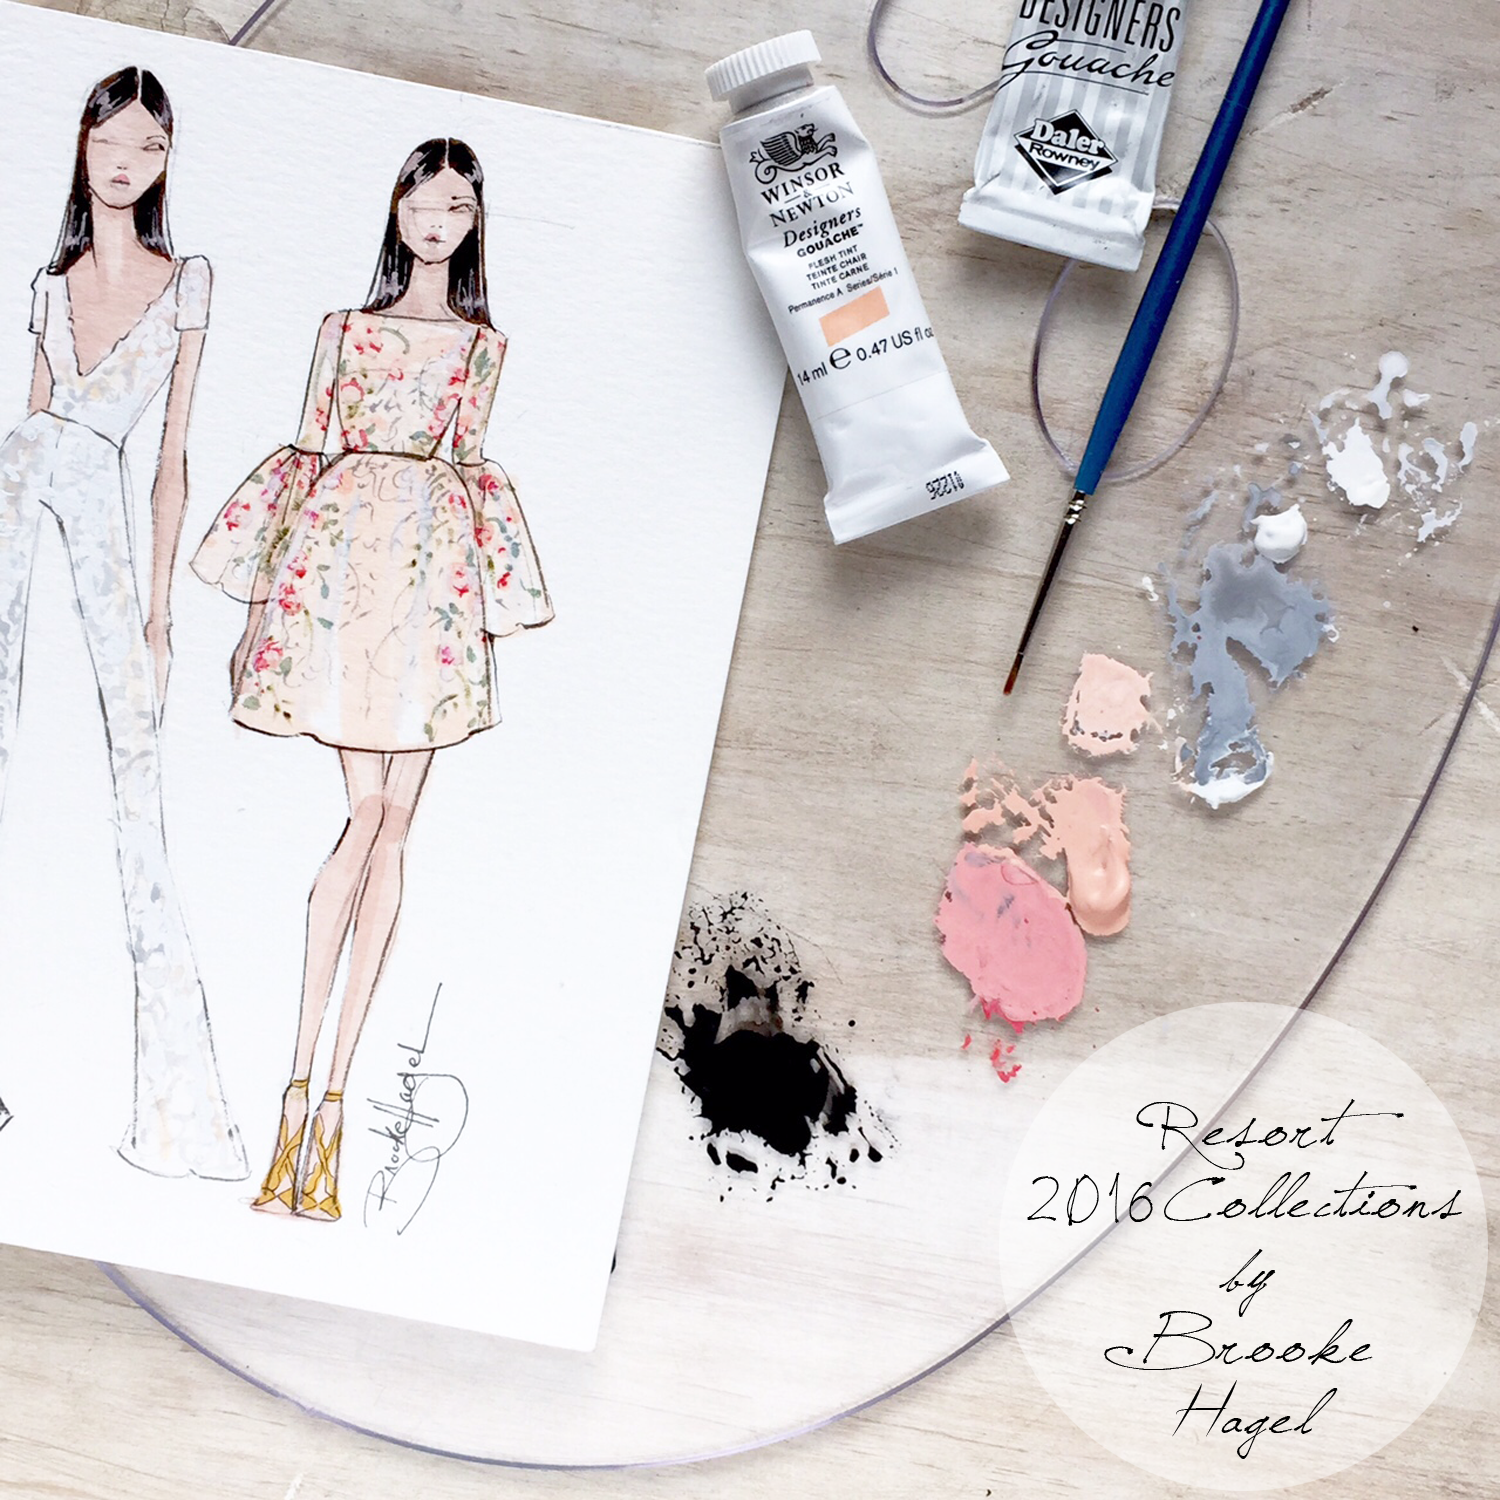 Ungkarl Danmark Føde Fabulous Doodles Fashion Illustration blog by Brooke Hagel: July 2015